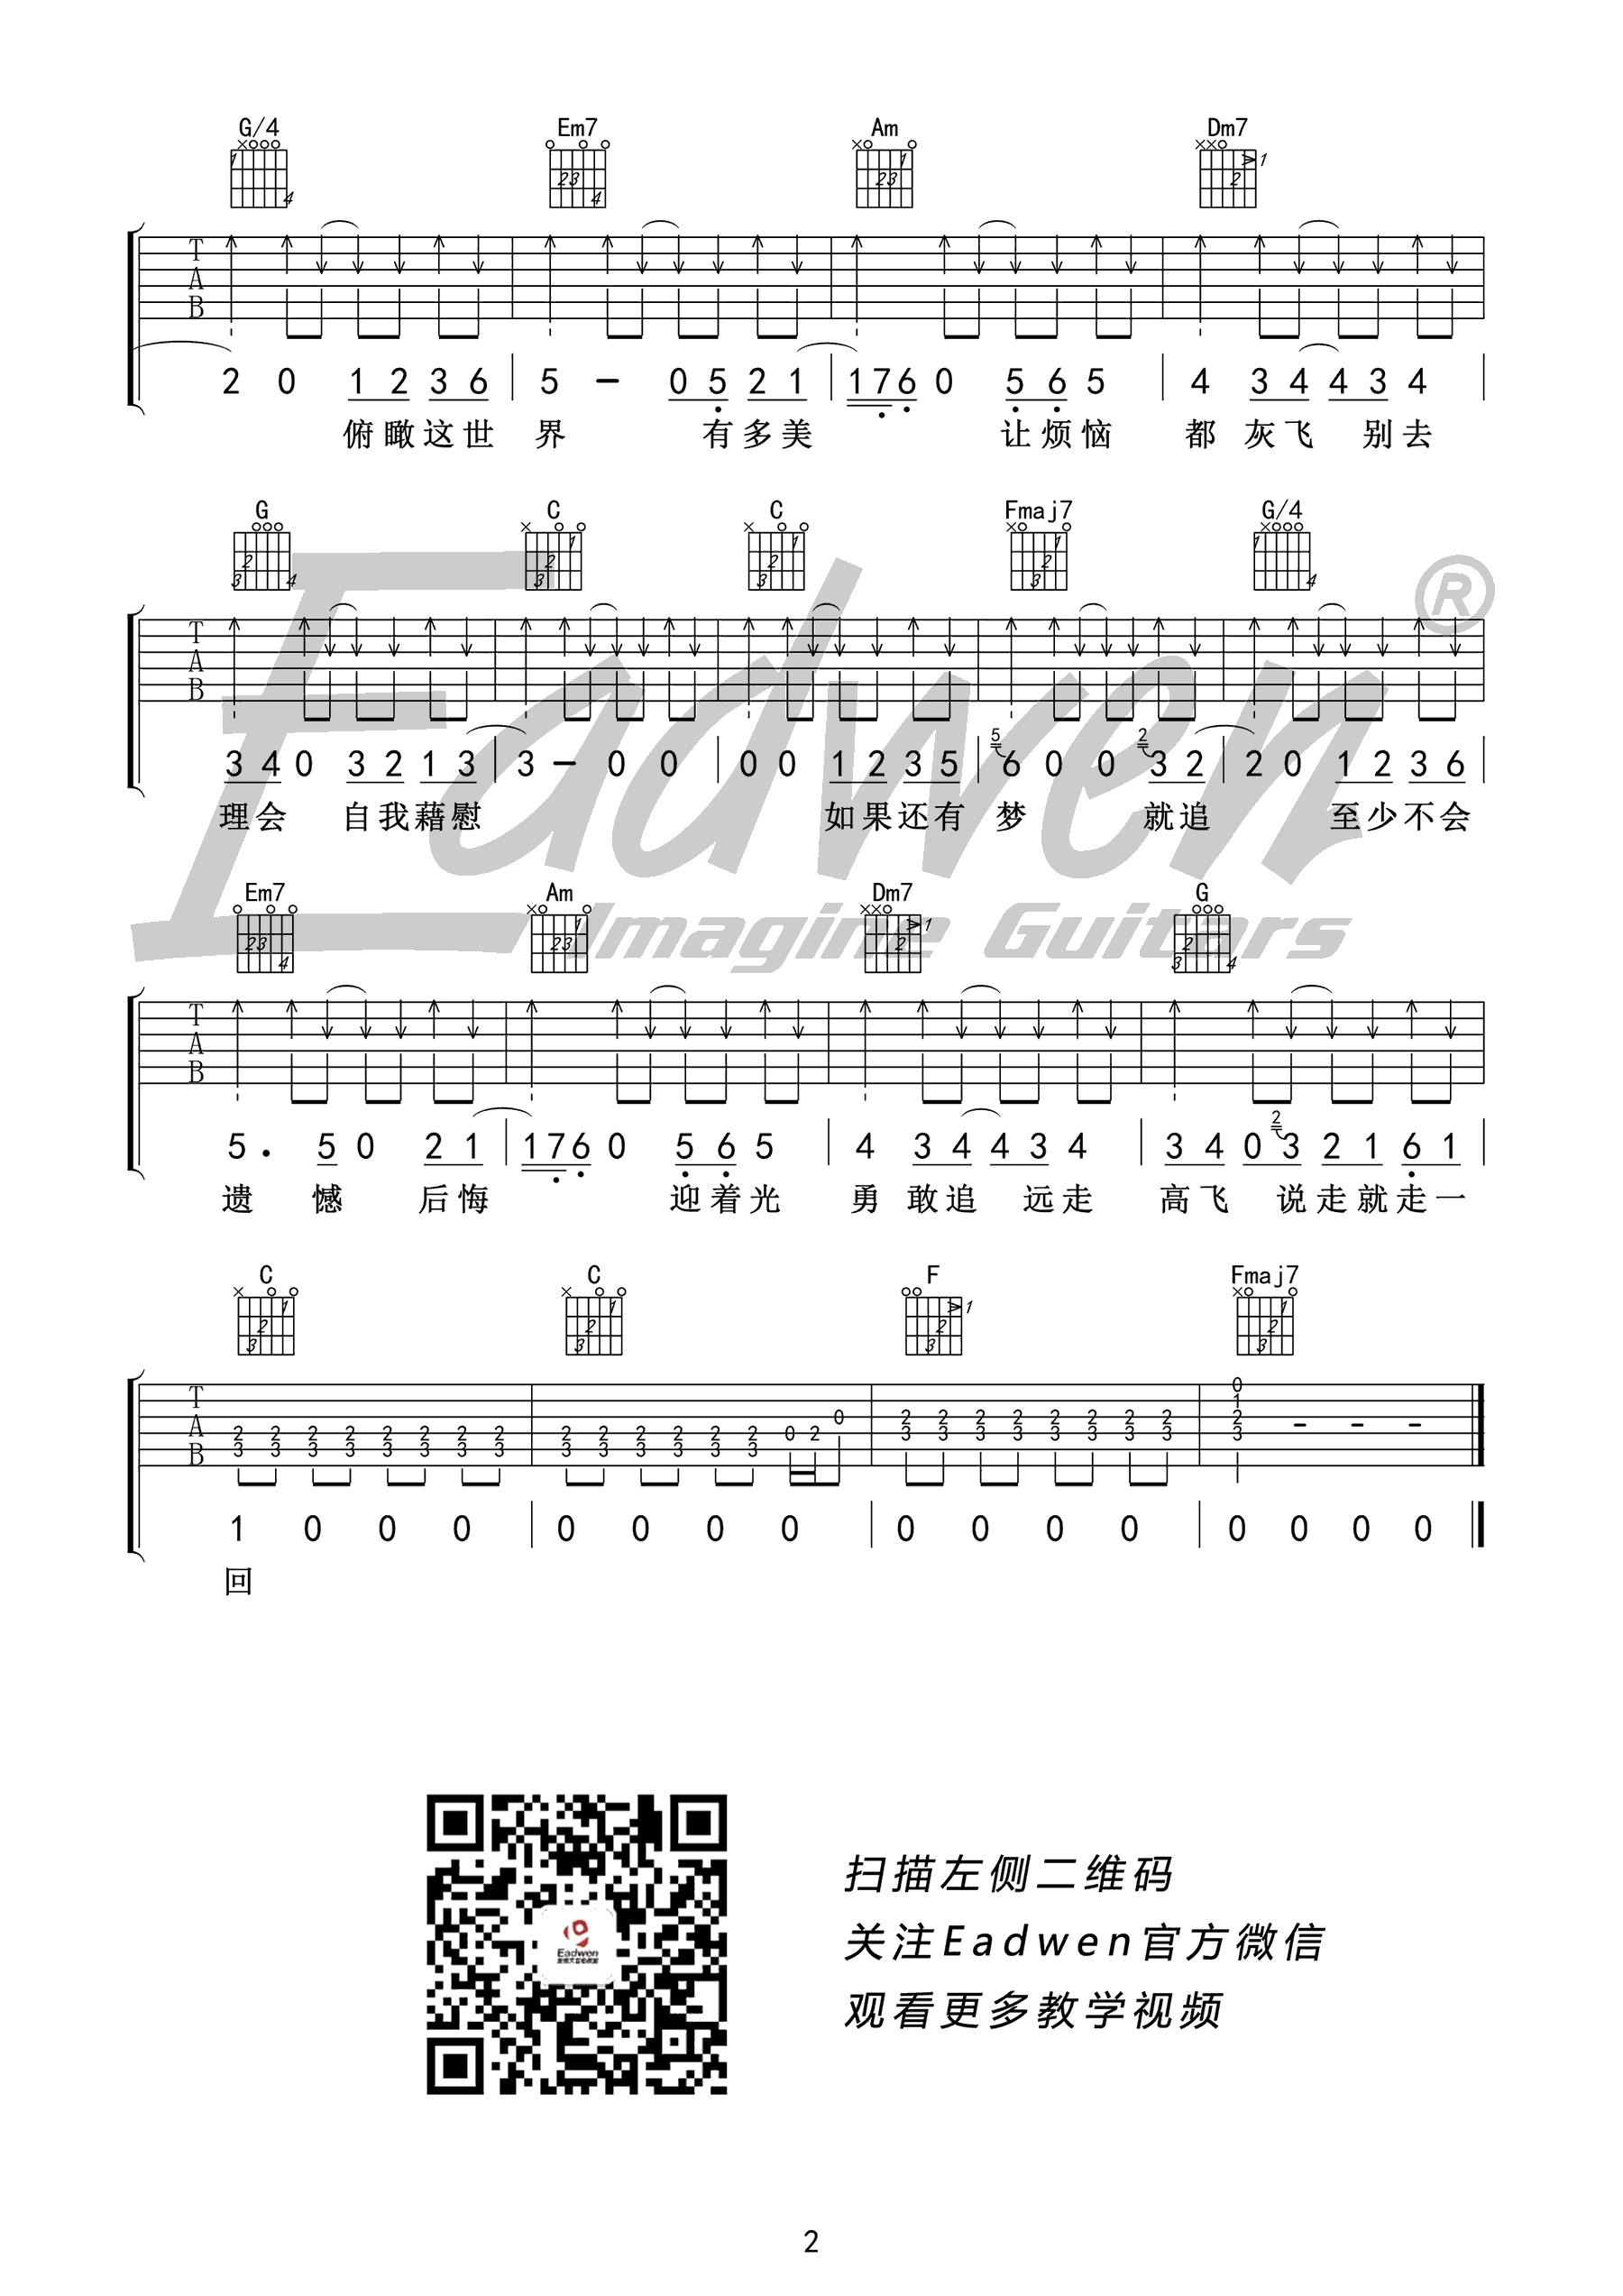 钢琴谱《远走高飞》用简单数字版制谱 - 白痴弹法 - 单手双手钢琴谱 - 钢琴简谱